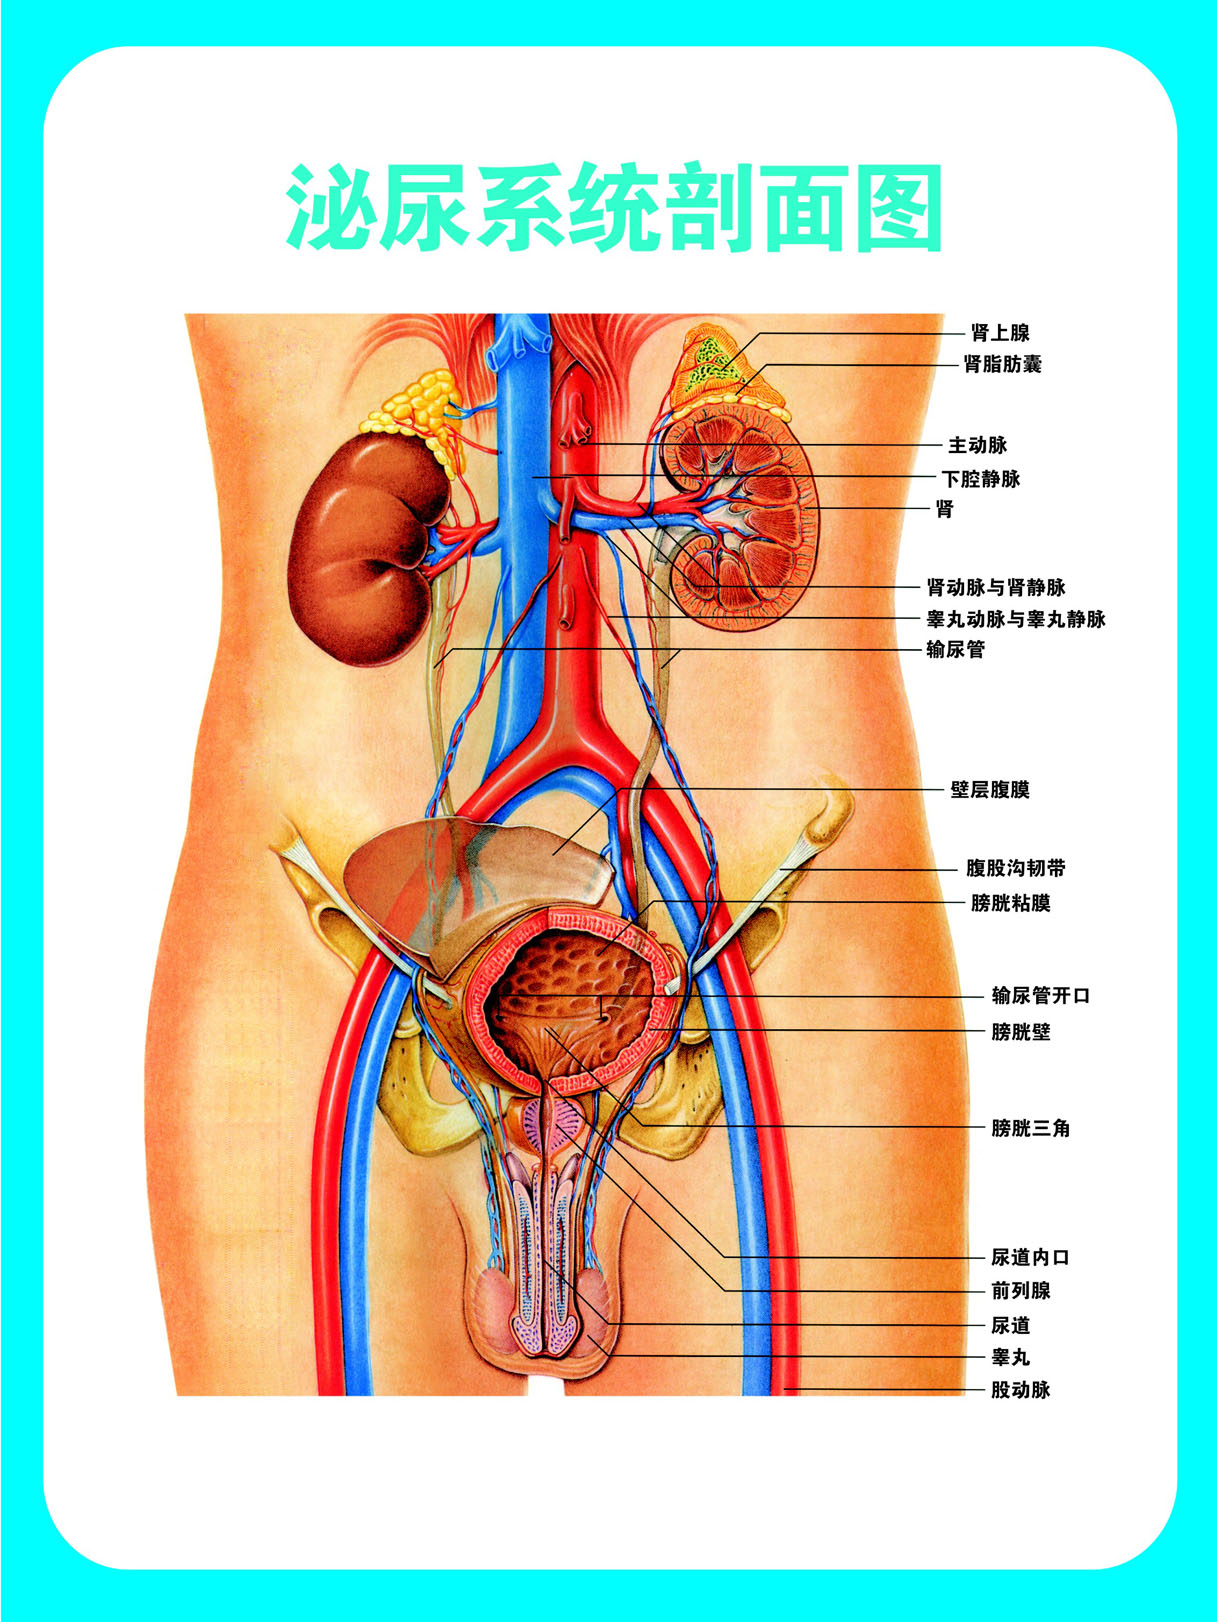 751薄膜海报印制展板喷绘写真470男科挂图泌尿系纺剖面图